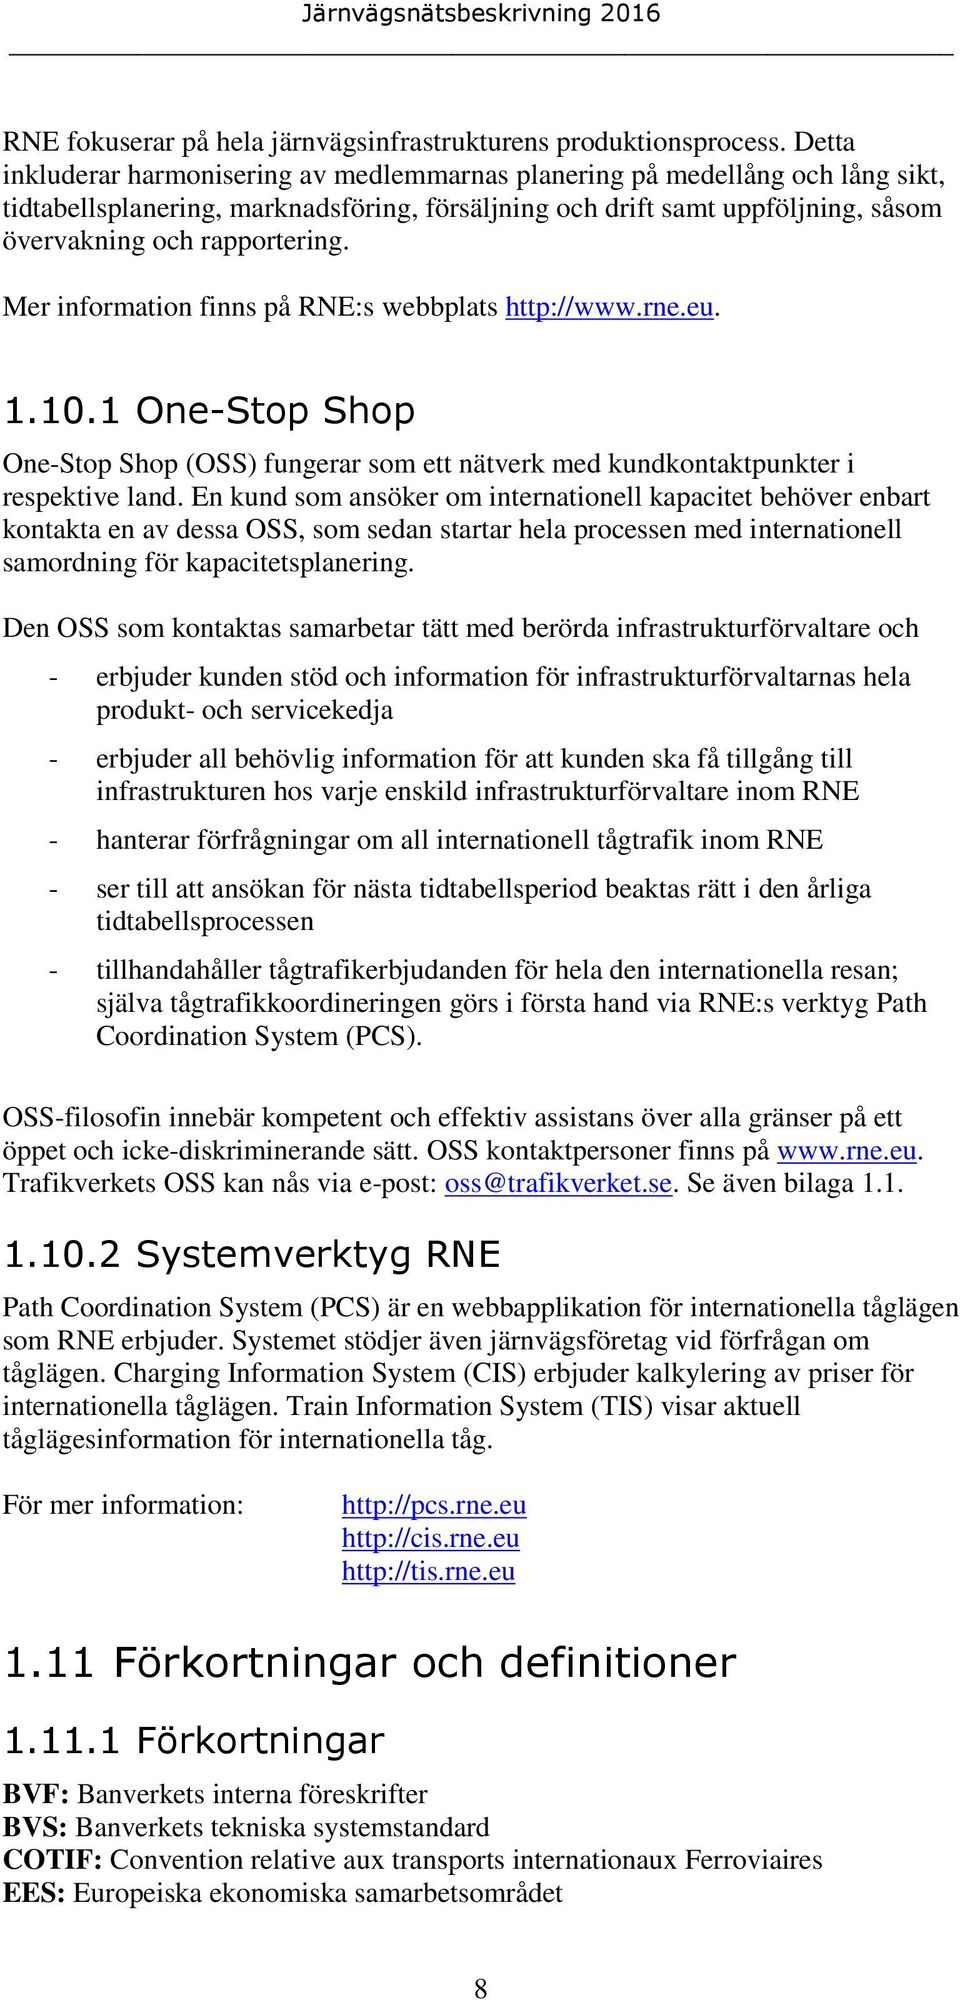 Mer information finns på RNE:s webbplats http://www.rne.eu. 1.10.1 One-Stop Shop One-Stop Shop (OSS) fungerar som ett nätverk med kundkontaktpunkter i respektive land.